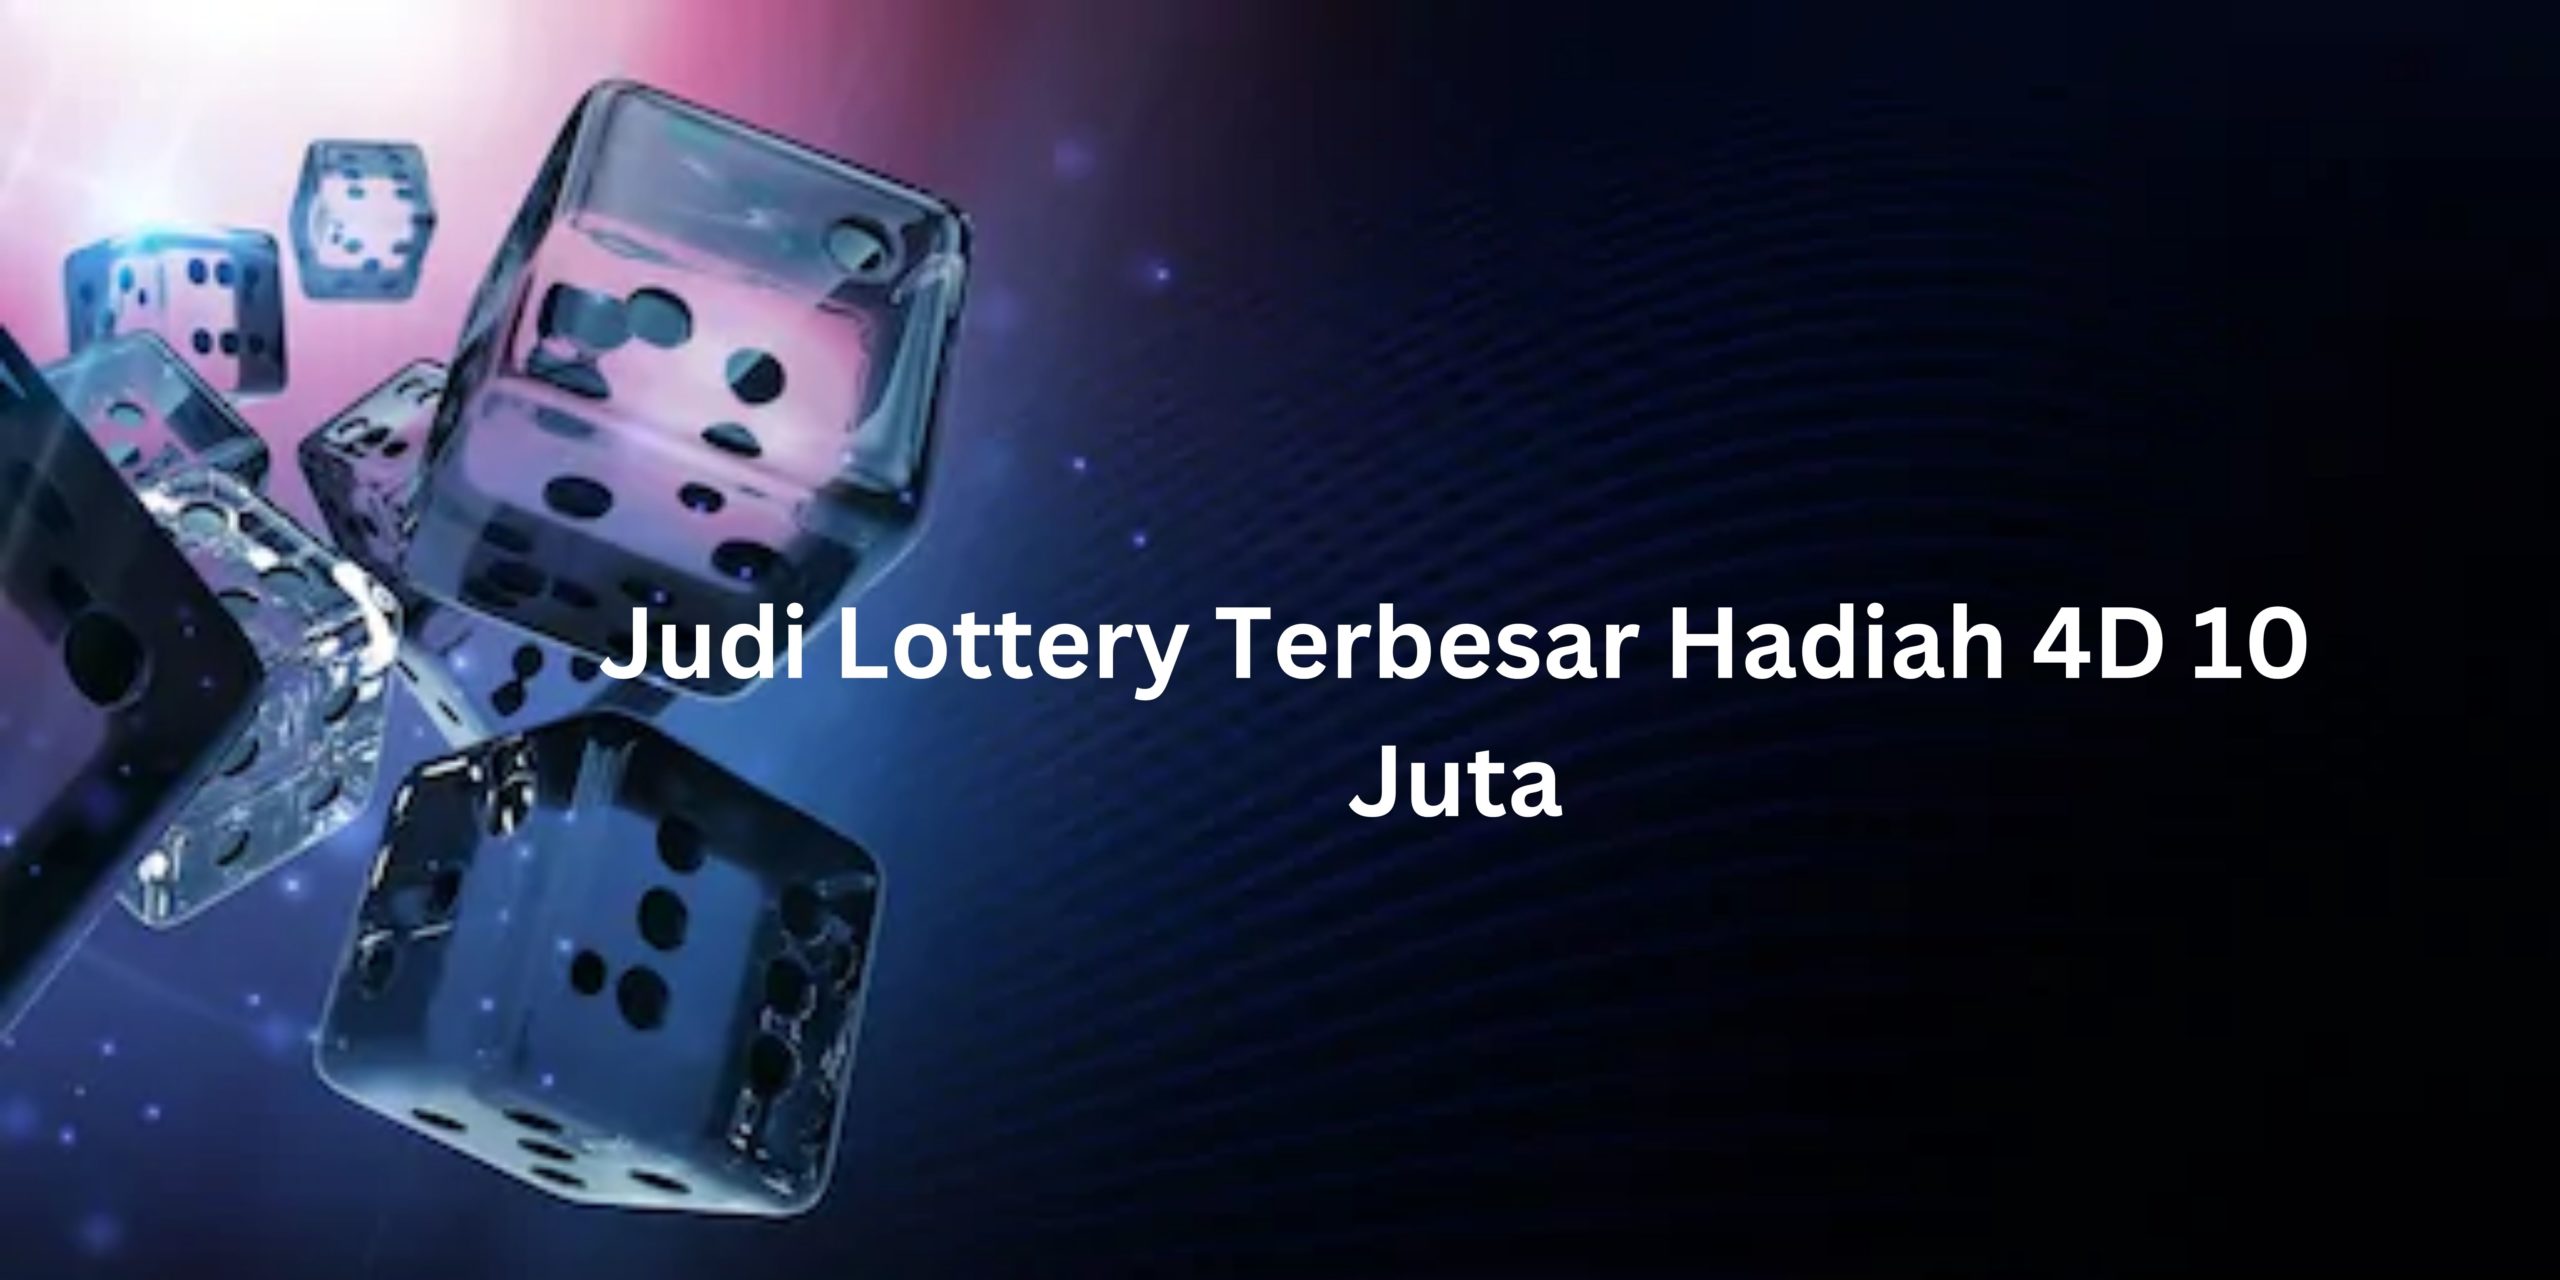 Judi Lottery Terbesar Hadiah 4D 10 Juta